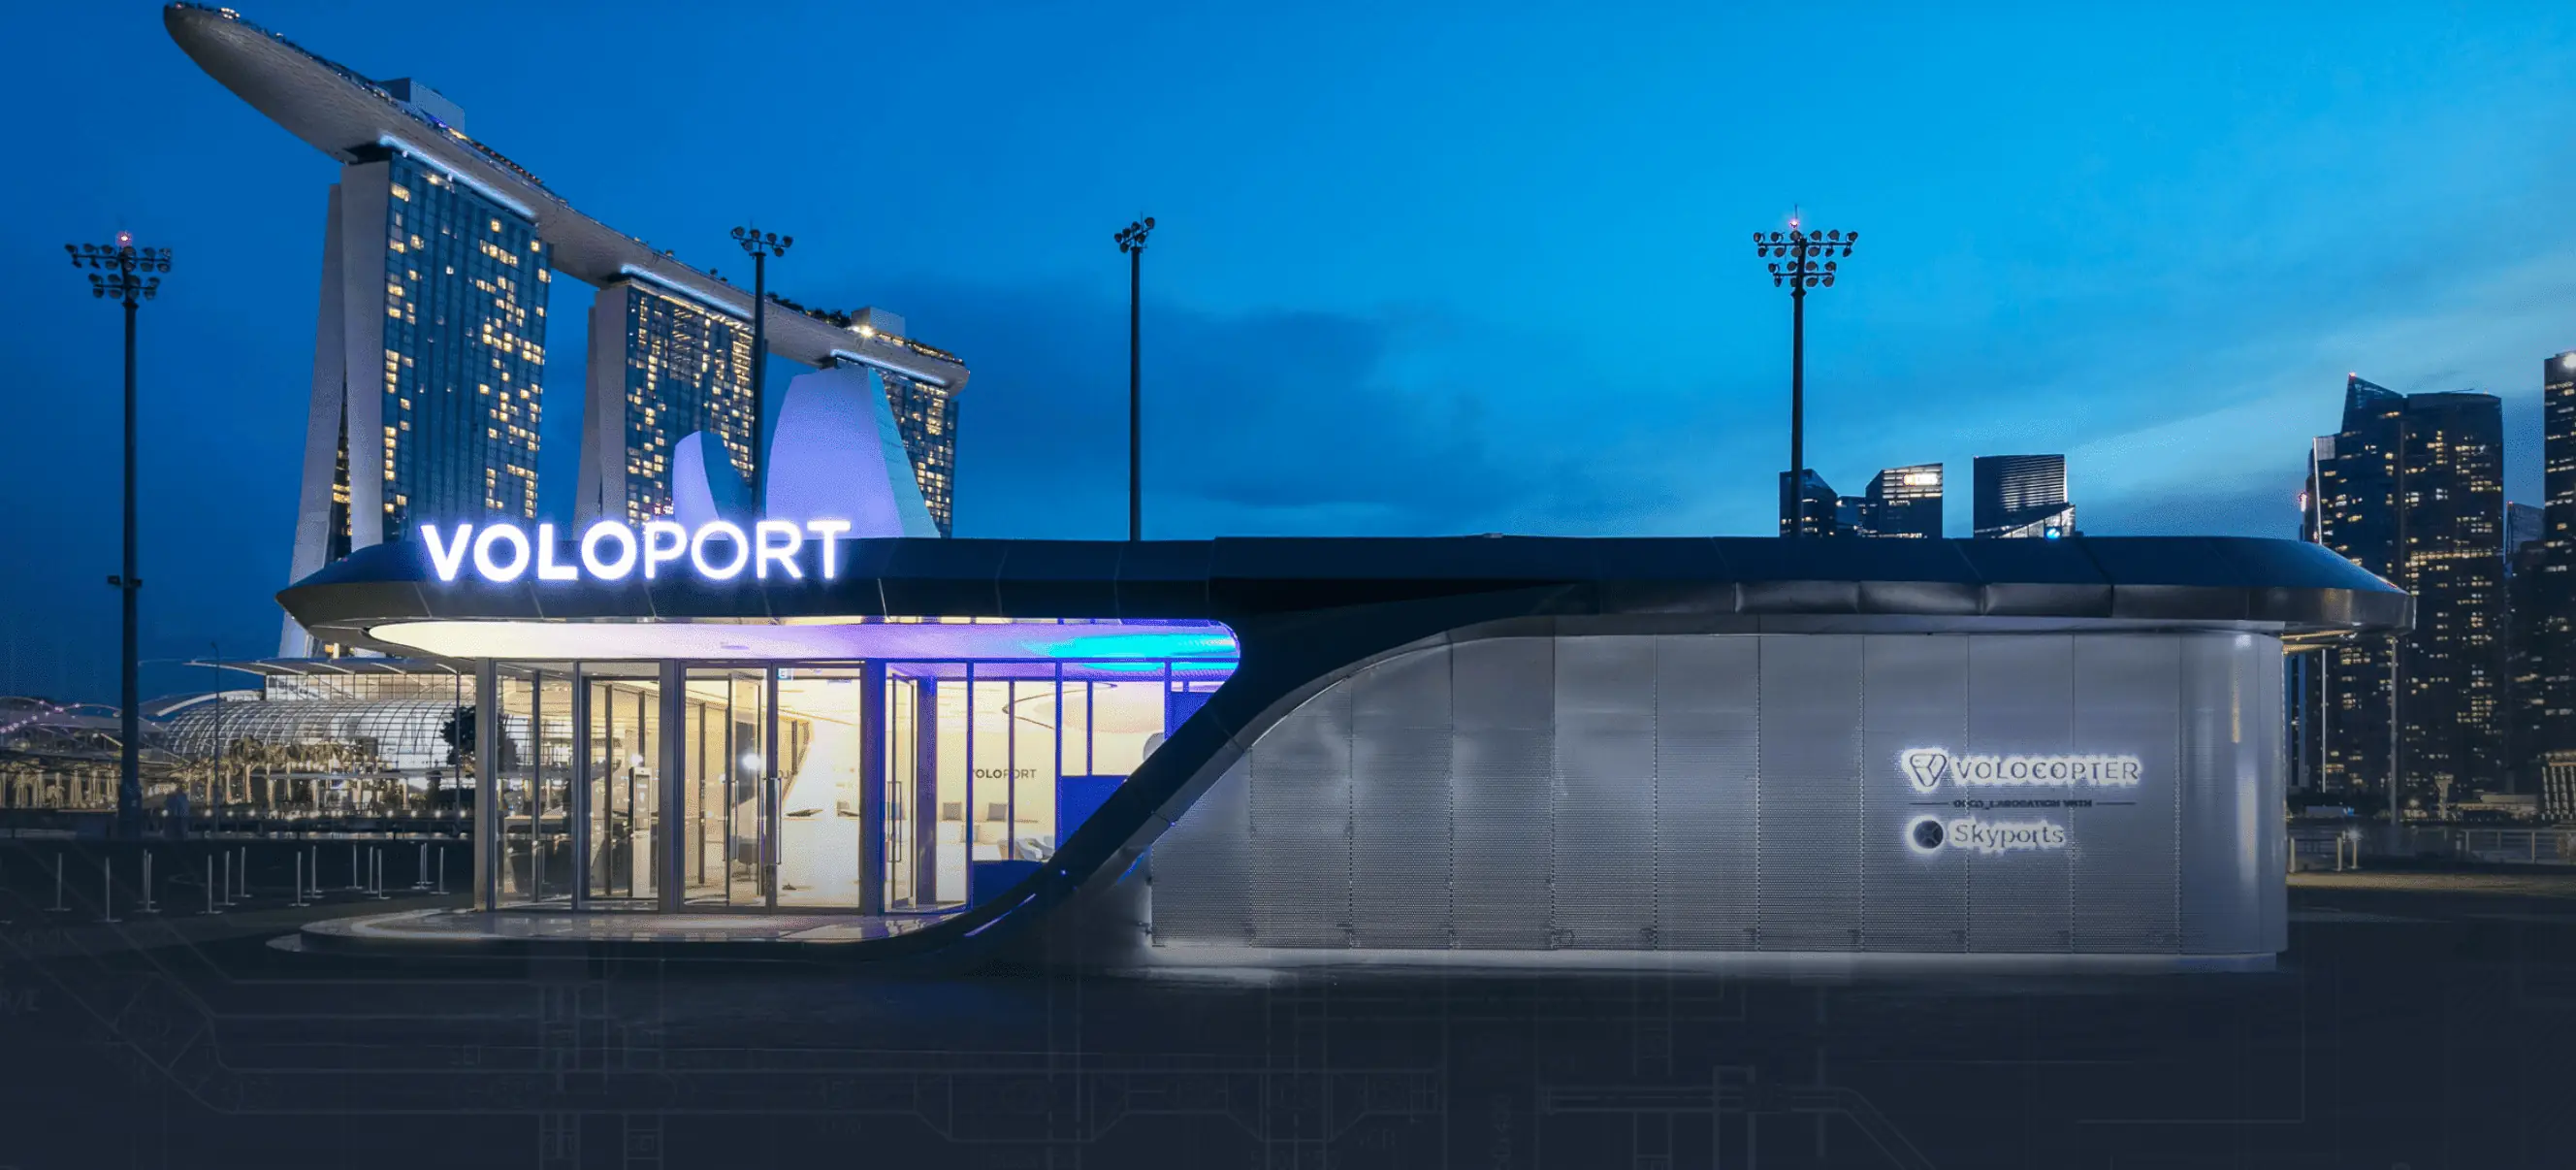 Skyports costruirà il primo vertiporto europeo